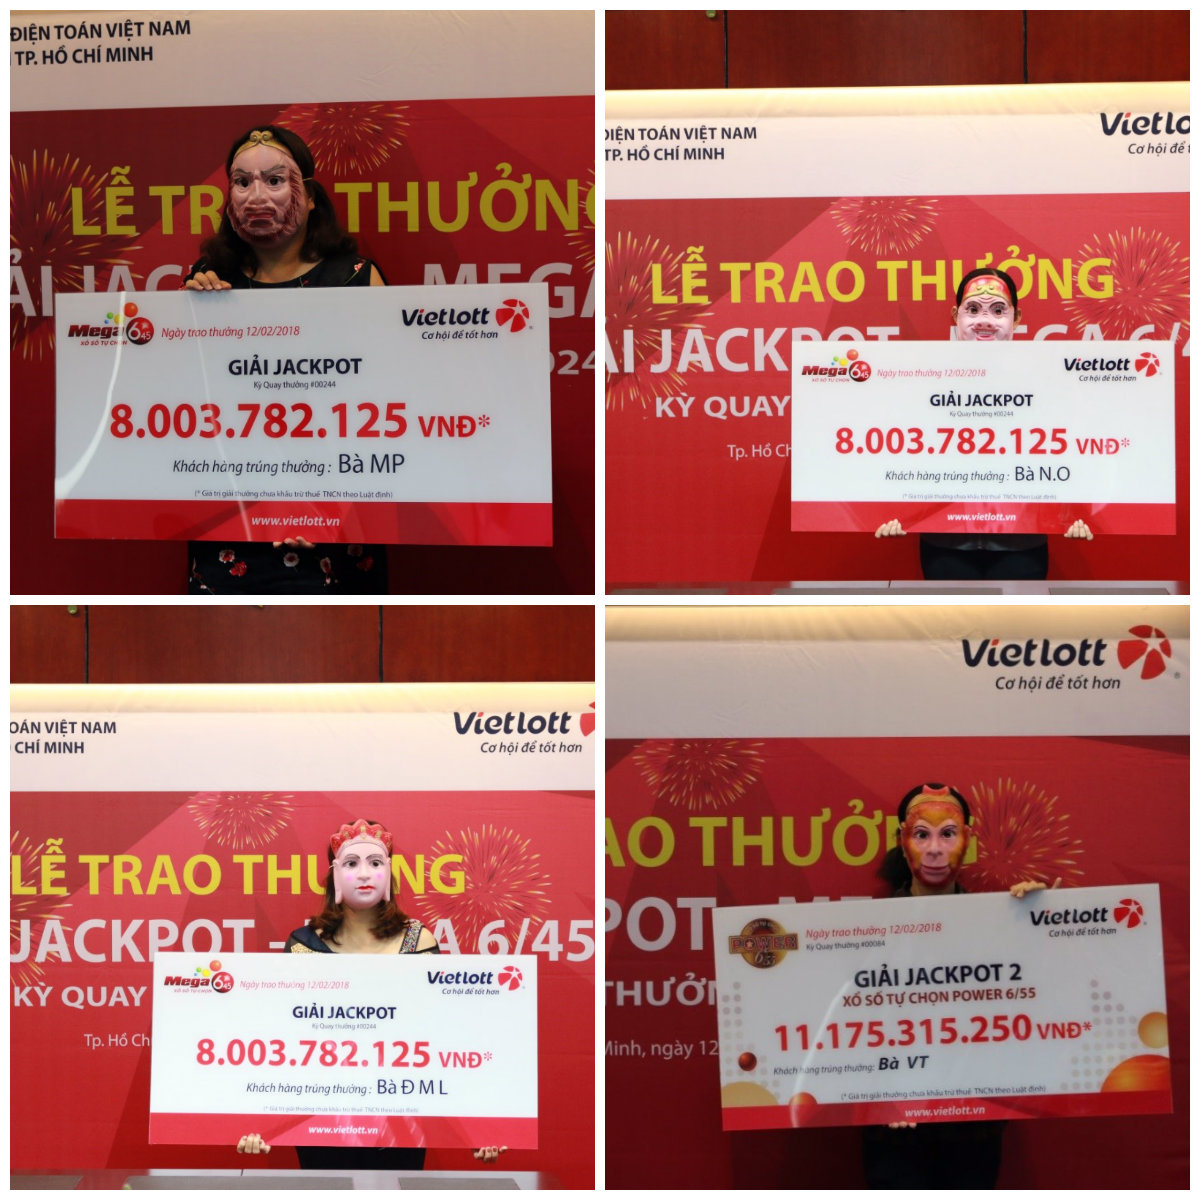 Xổ số Vietlott: 4 khách hàng đeo mặt nạ Tây Du Kí nhận thưởng Jackpot về ăn Tết